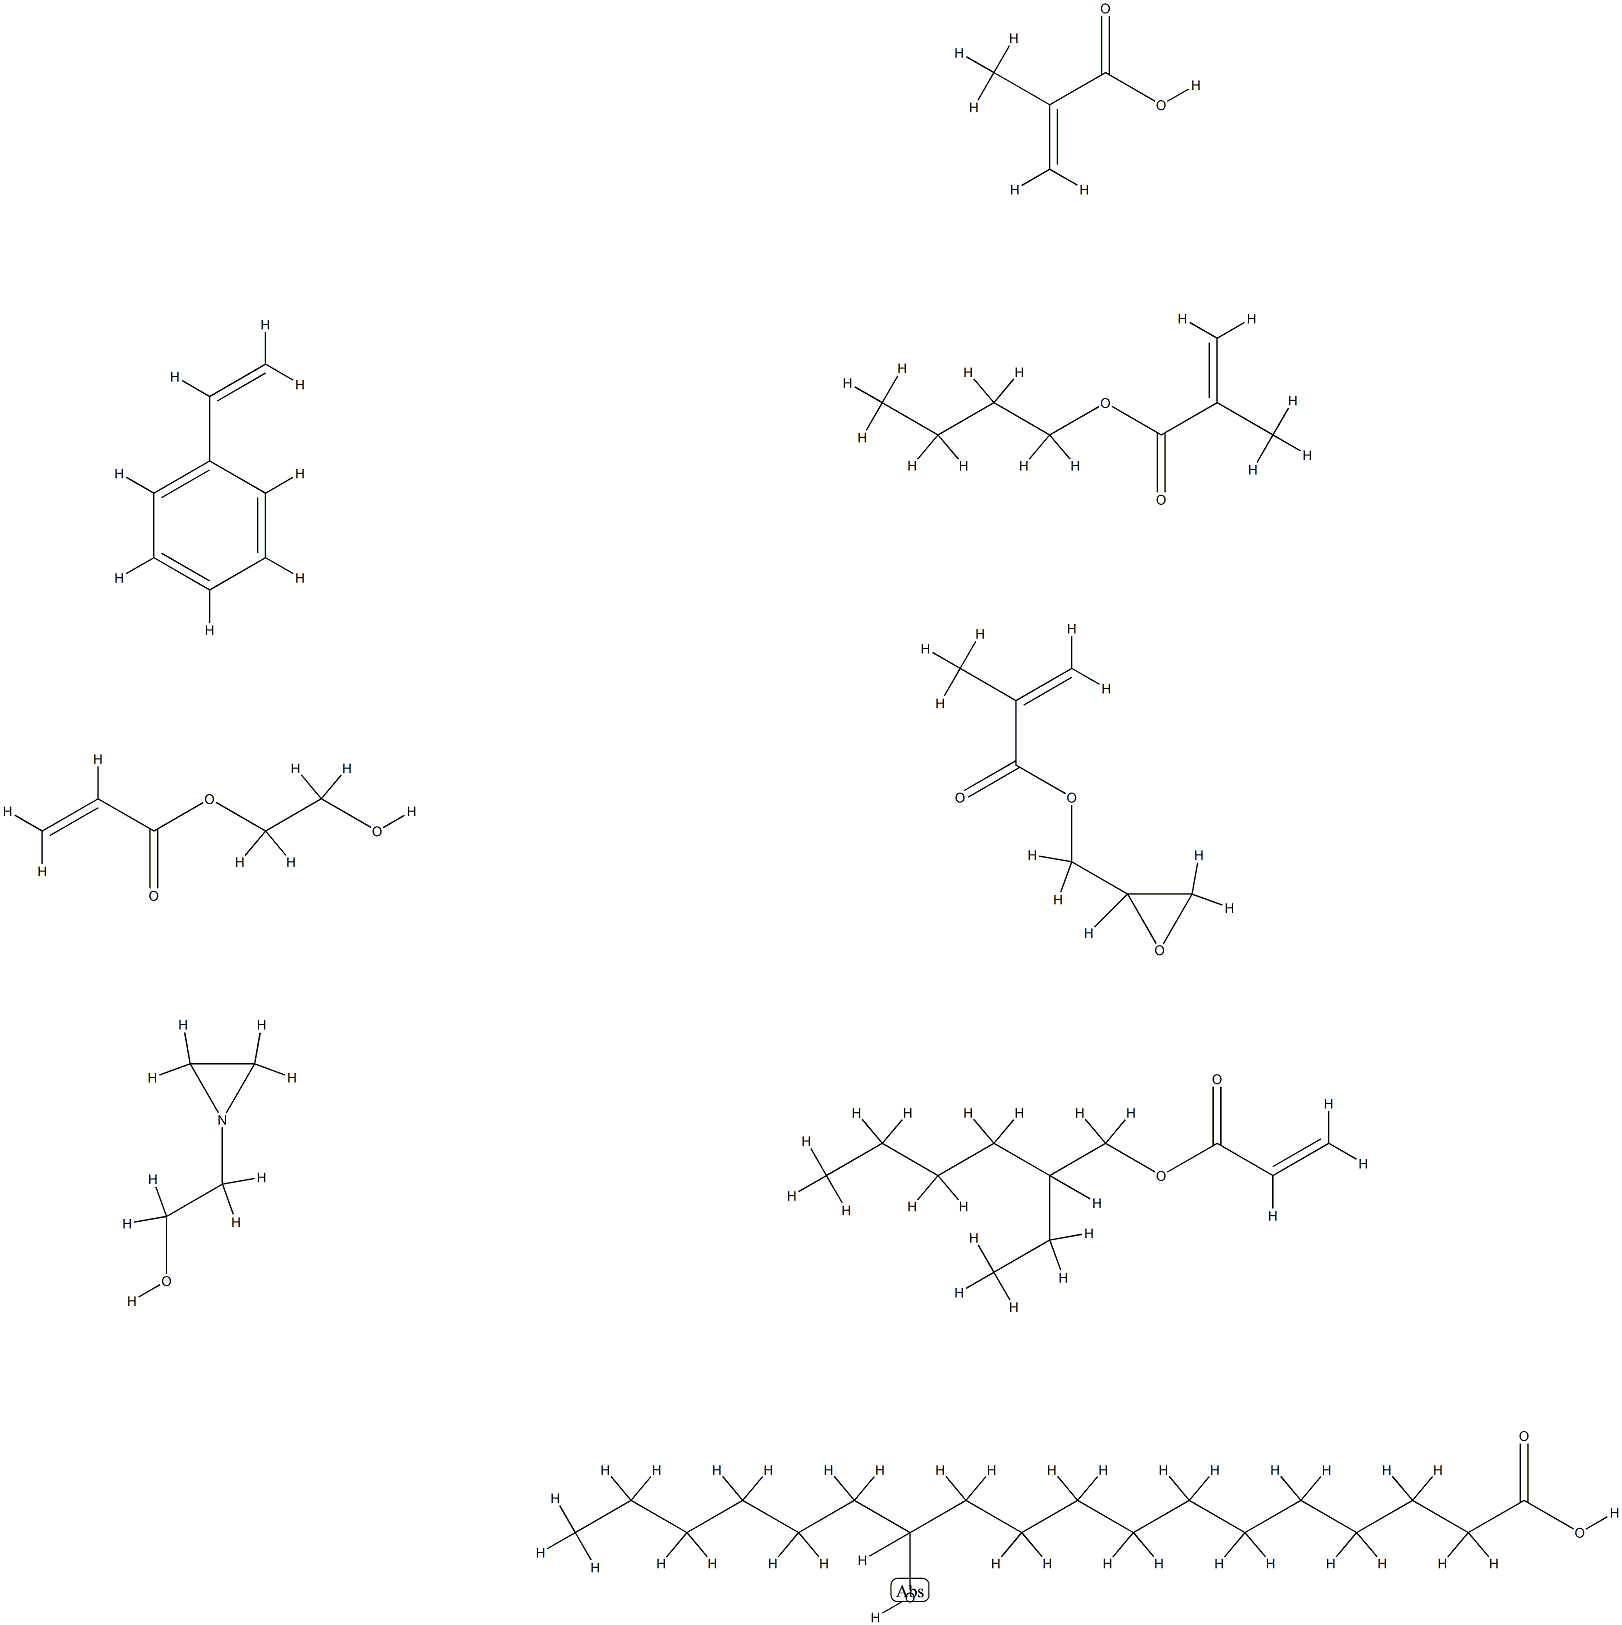 옥타데칸산,12-히드록시-,부틸2-메틸-2-프로페노에이트중합체,에테닐벤젠,2-에틸헥실2-프로페노에이트,2-히드록시에틸2-프로펜에이트,2-메틸-2-프로펜산및옥시라닐메틸2-메틸-2-프로페노에이트,1-아지리딘에탄올-말단